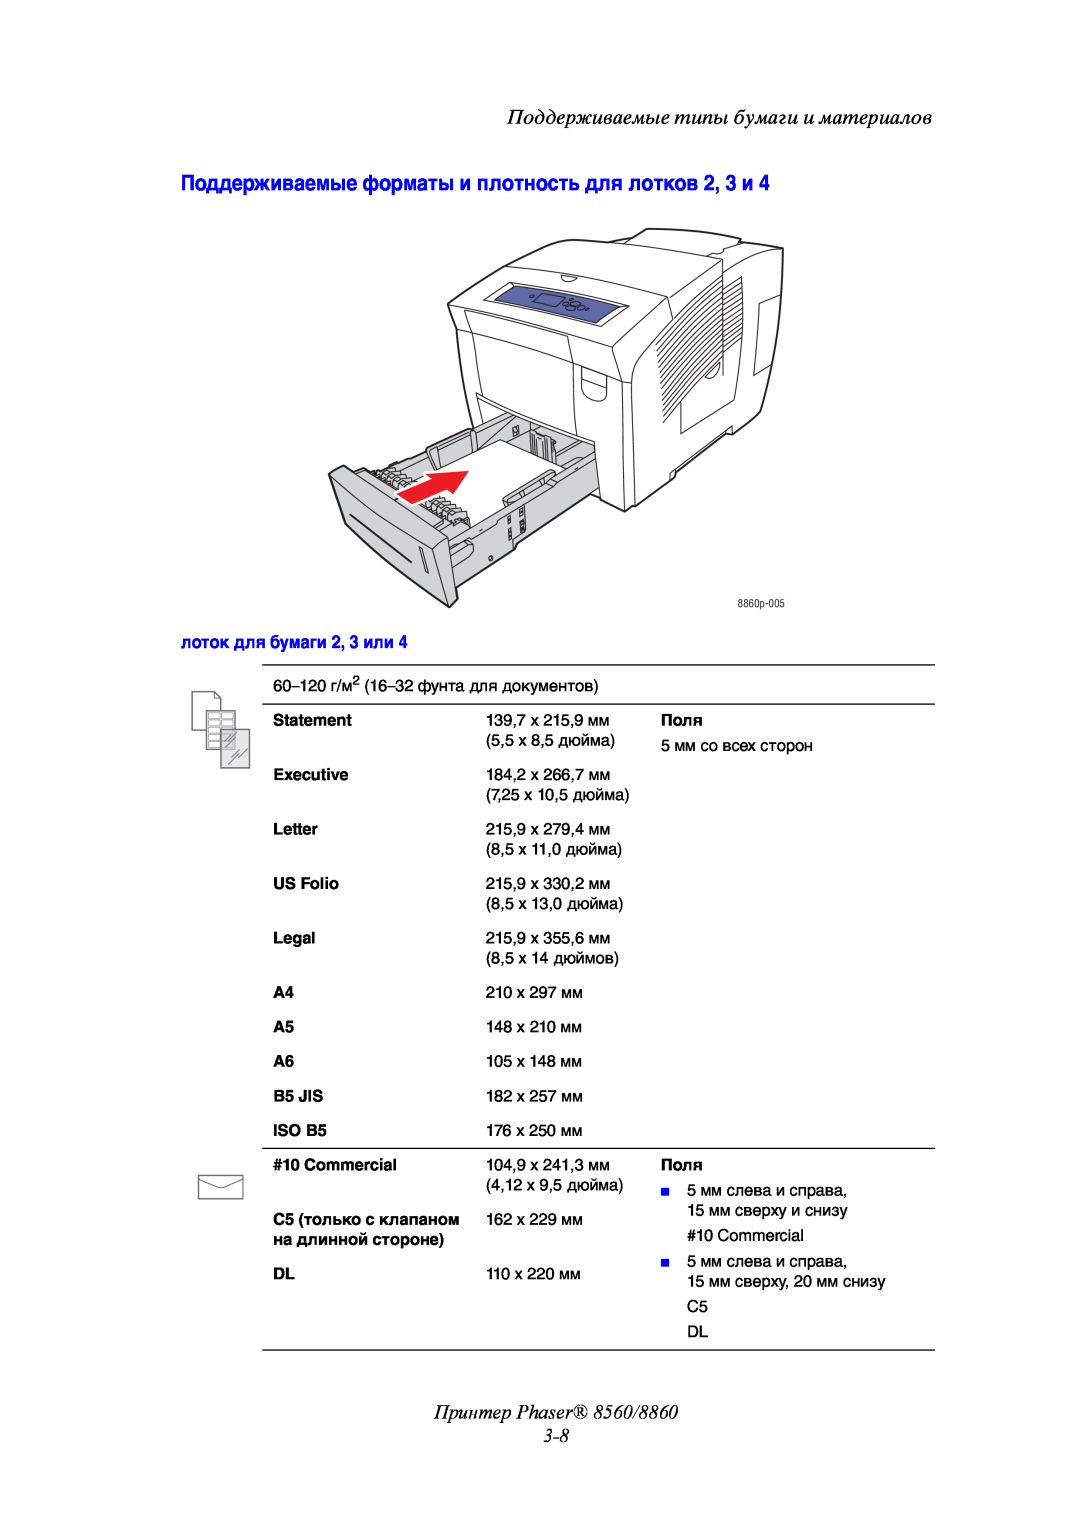 Xerox Поддерживаемые форматы и плотность для лотков 2, 3 и, Принтер Phaser 8560/8860 3-8, лоток для бумаги 2, 3 или 